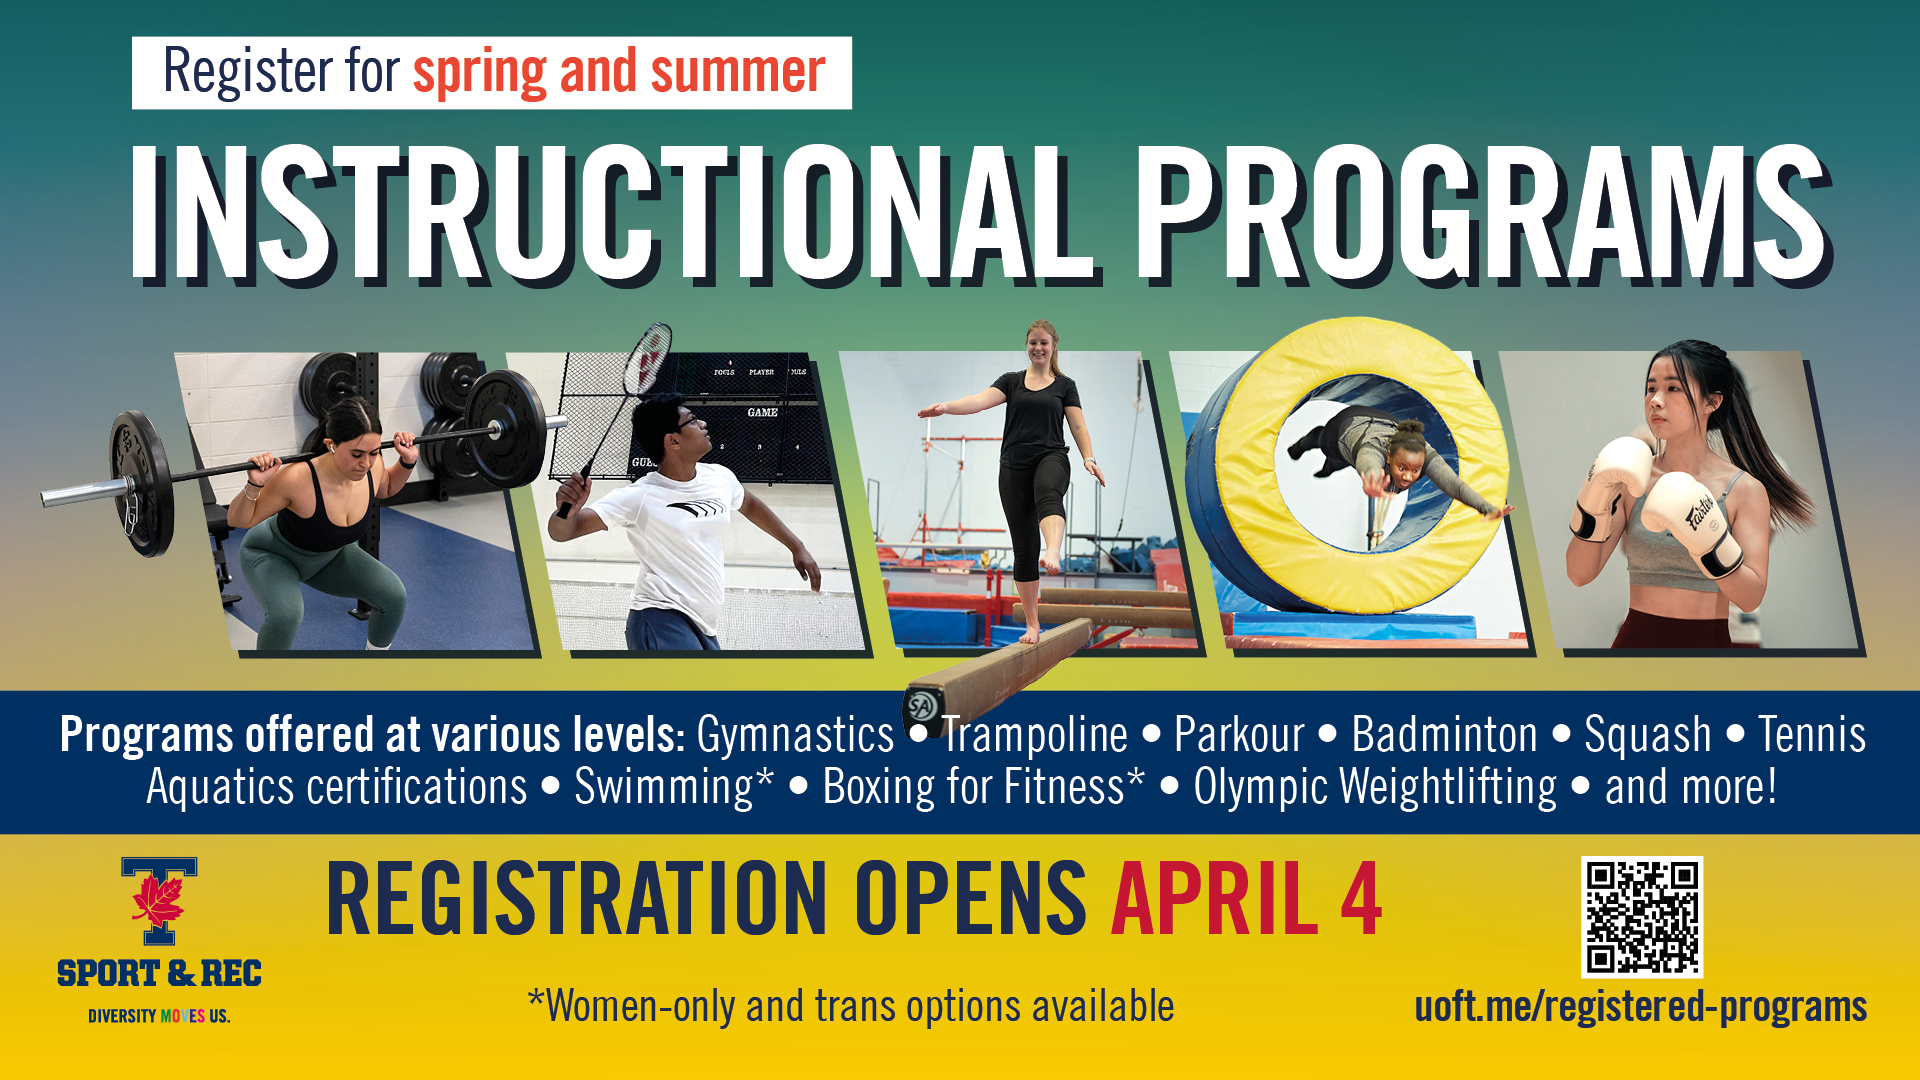 Register for Spring Instructional Programs